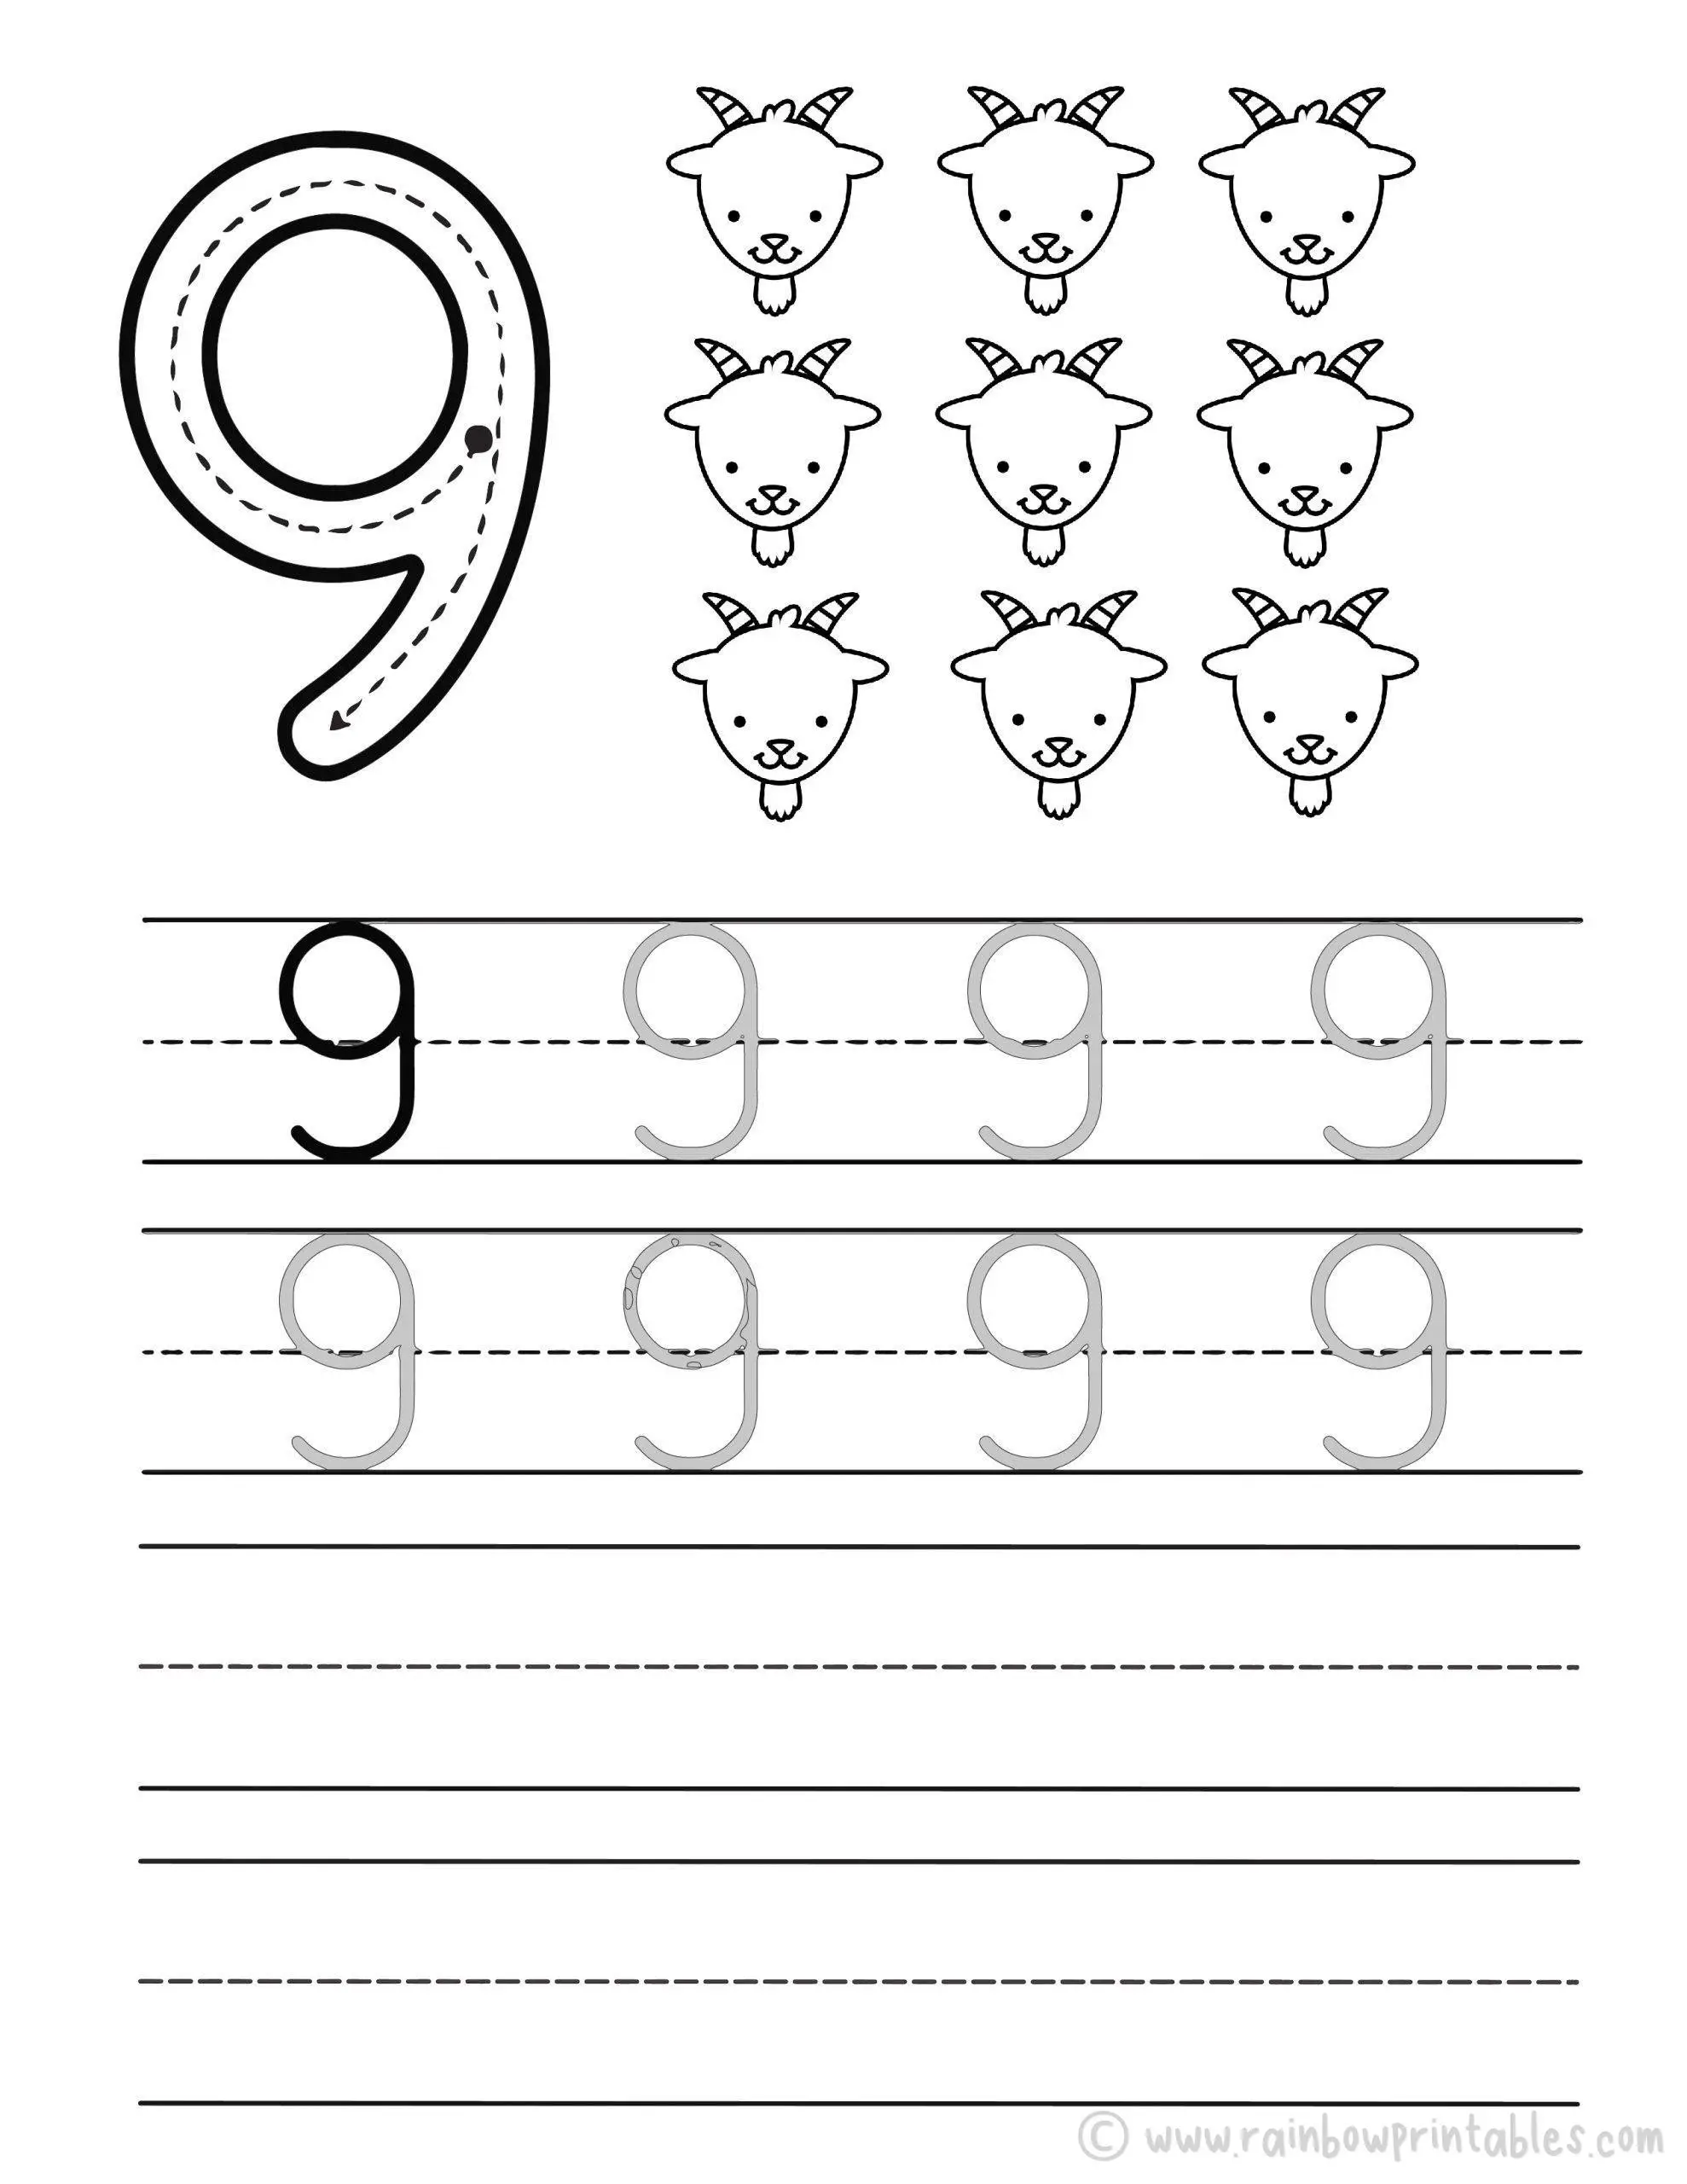 Tracing Number Worksheet for Kids Preschool Kindergarten Math Activities NINE 09